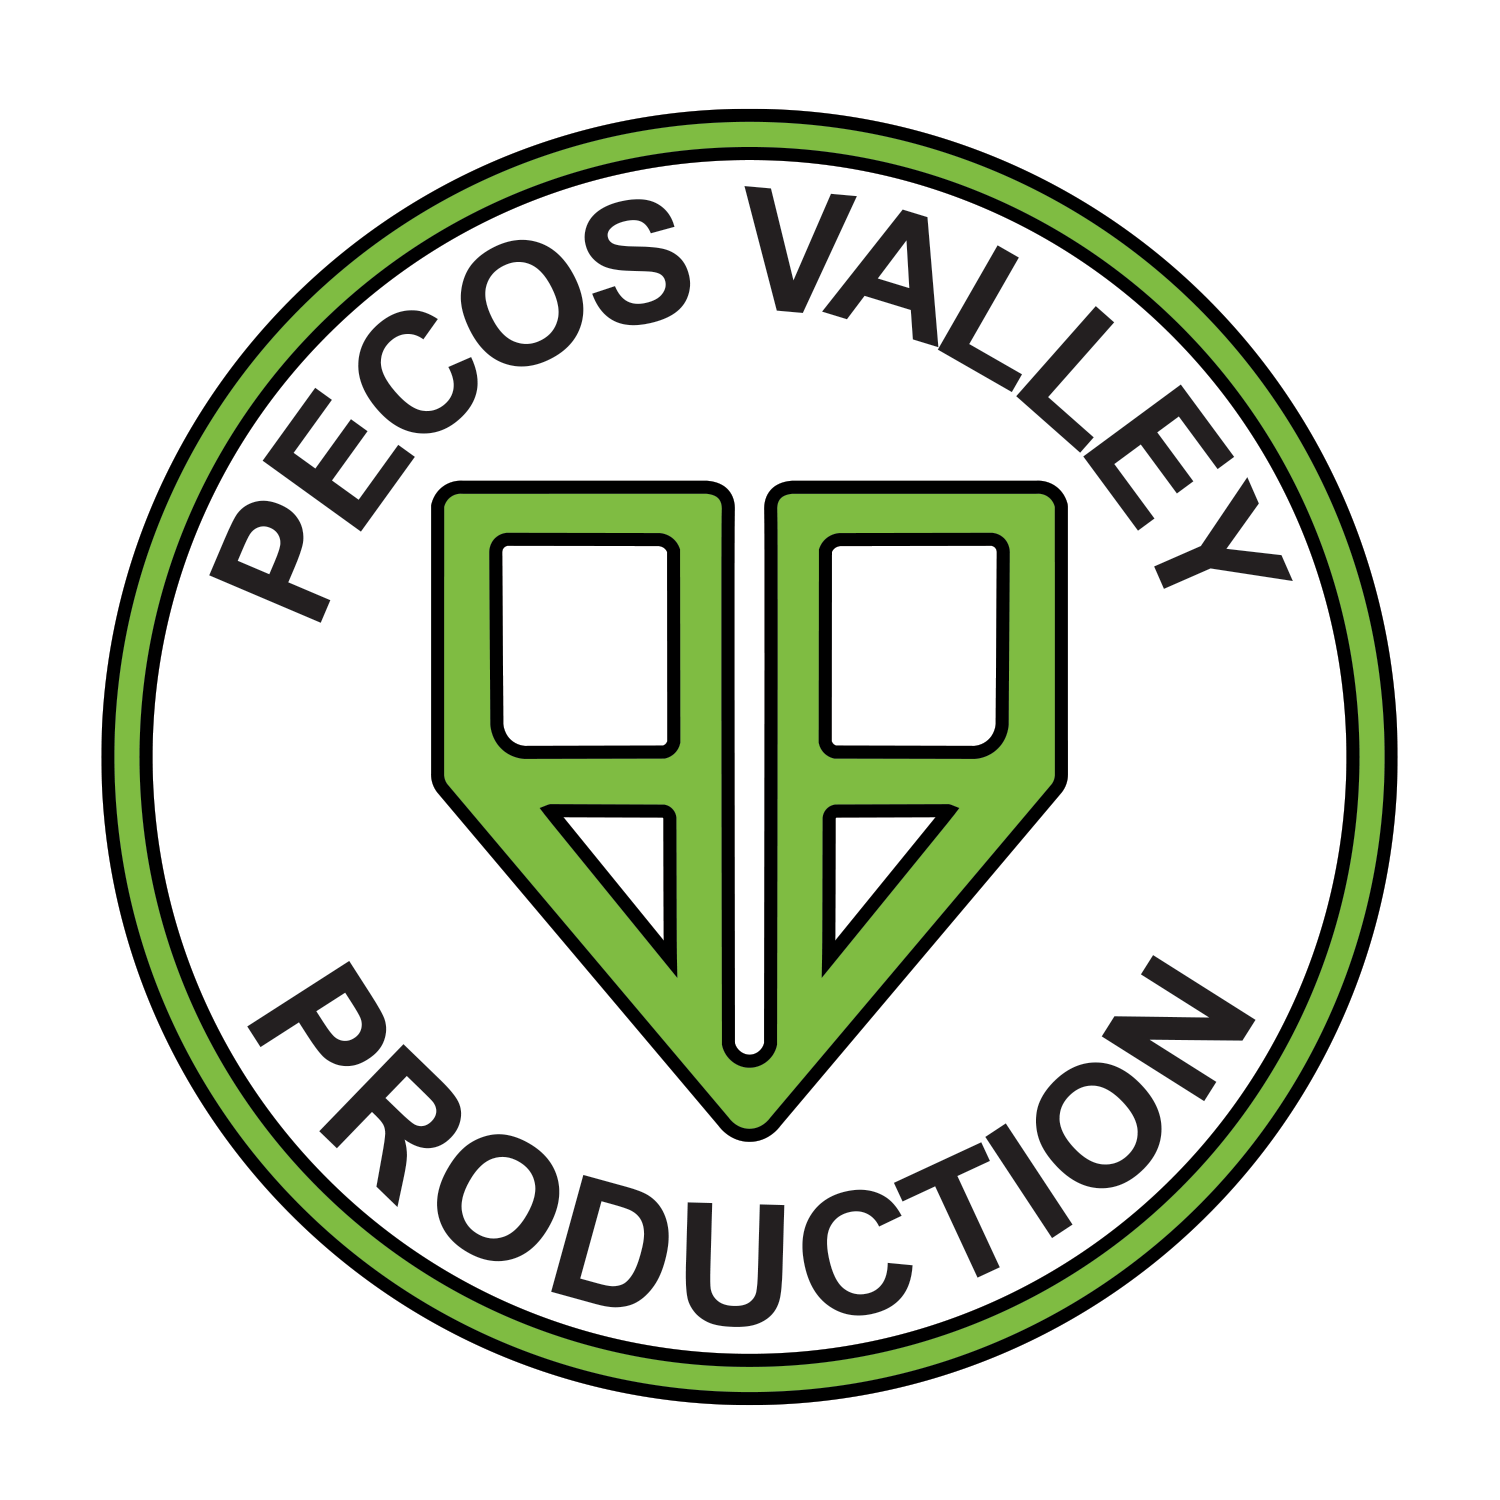 Pecos Valley Production Dispensary - Albuquerque logo